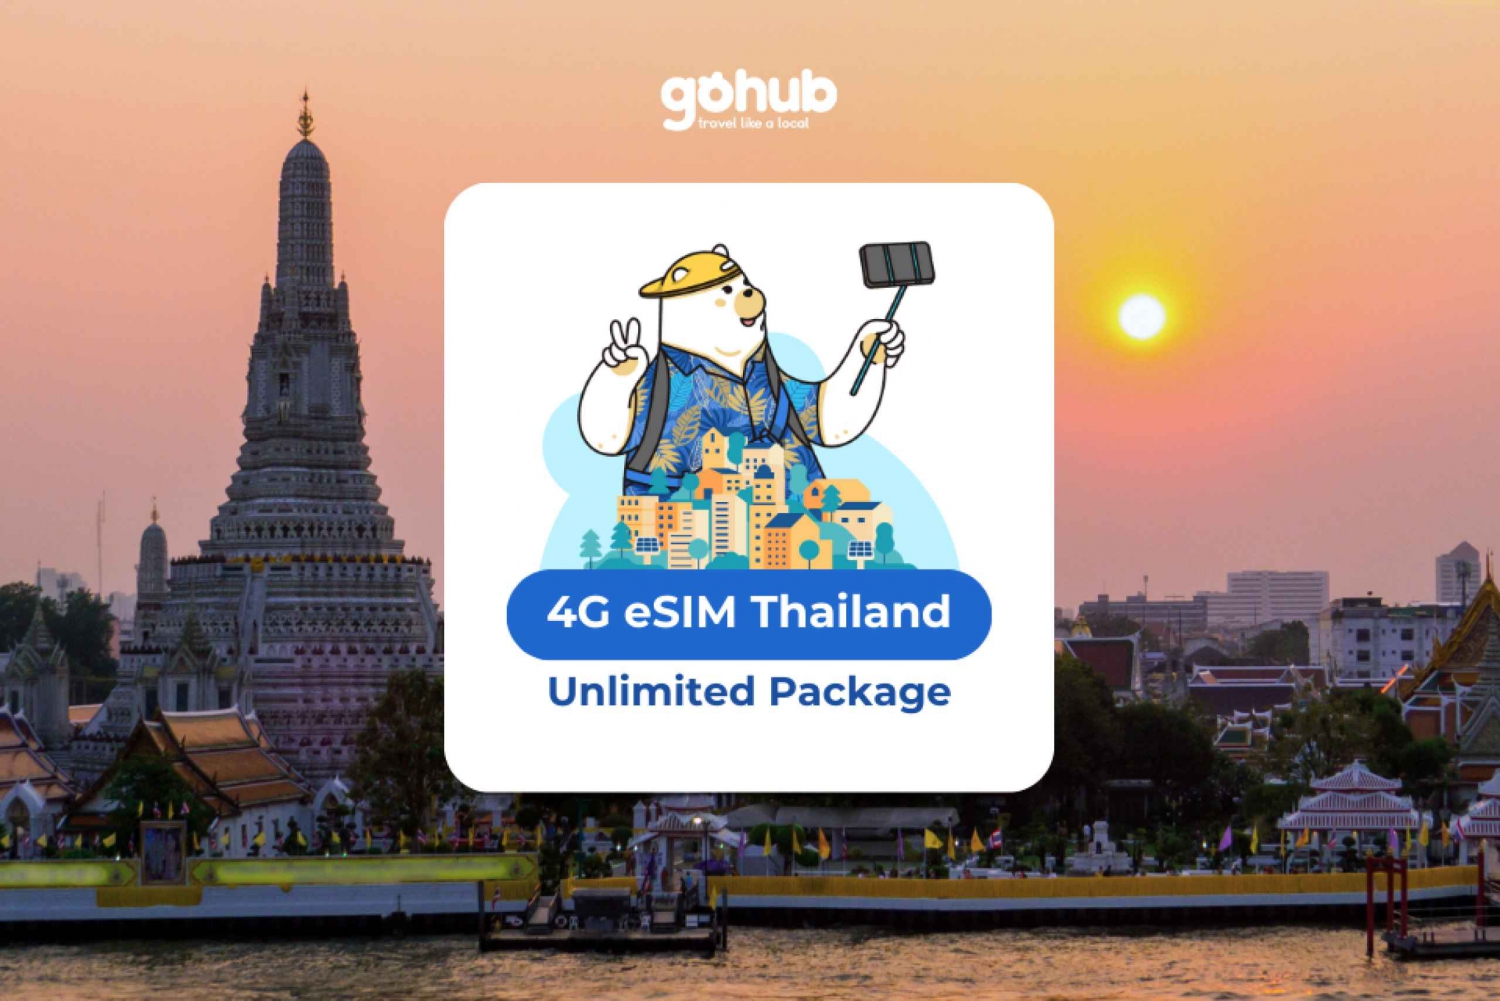 Thaïlande eSIM avec données illimitées pendant 10 jours : Vente Flash